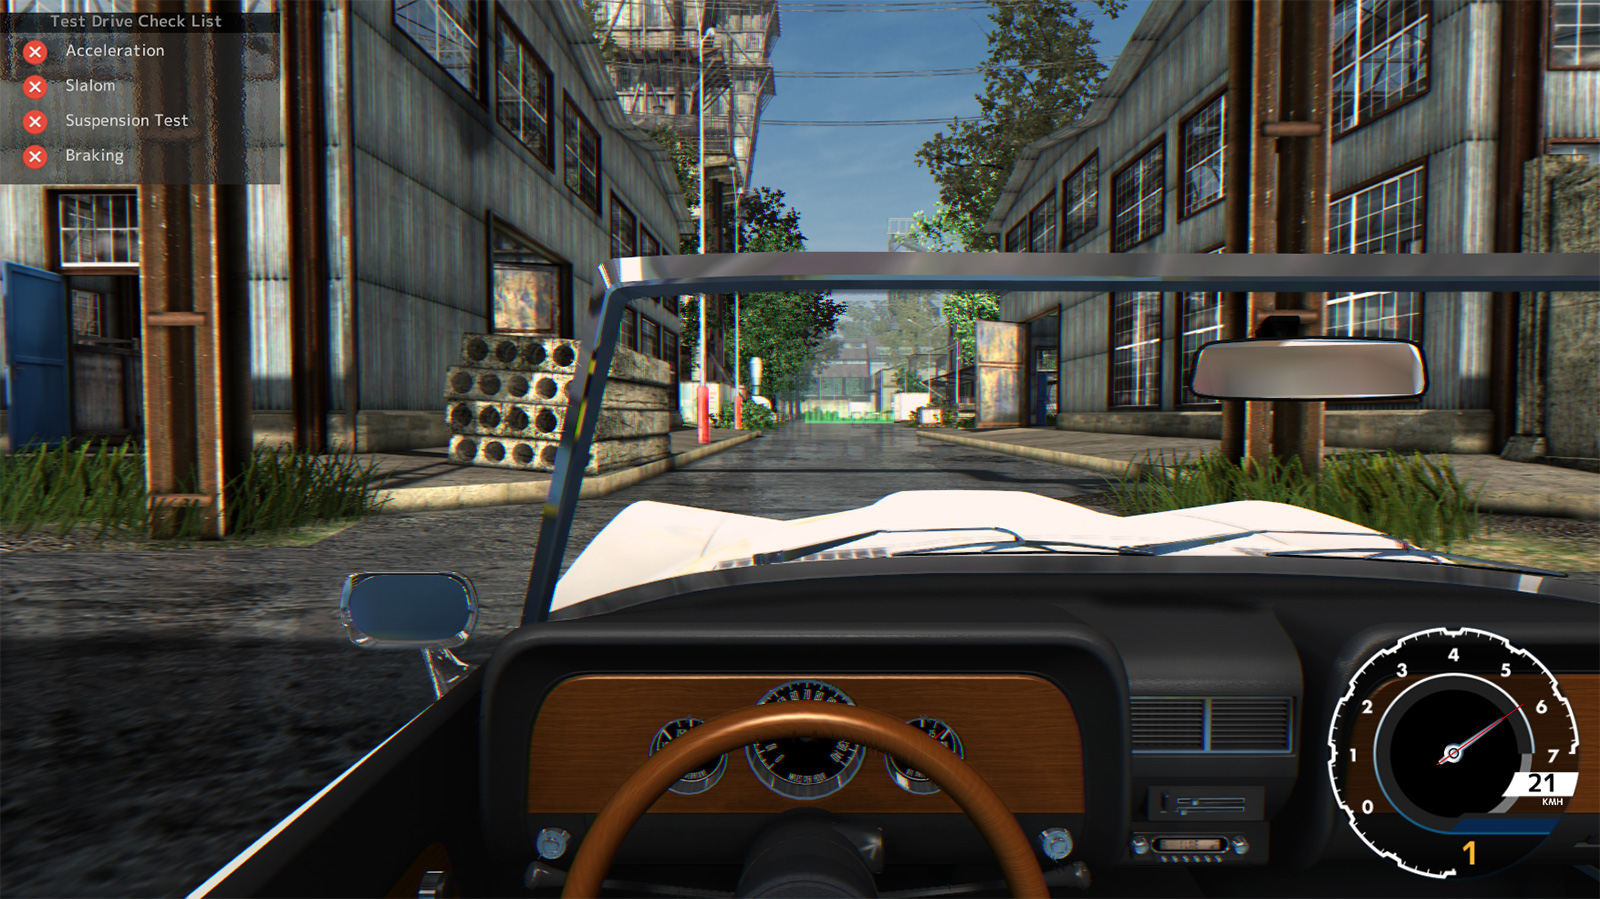 Car Mechanic Simulator 2015, game de conserto de carros, chega em